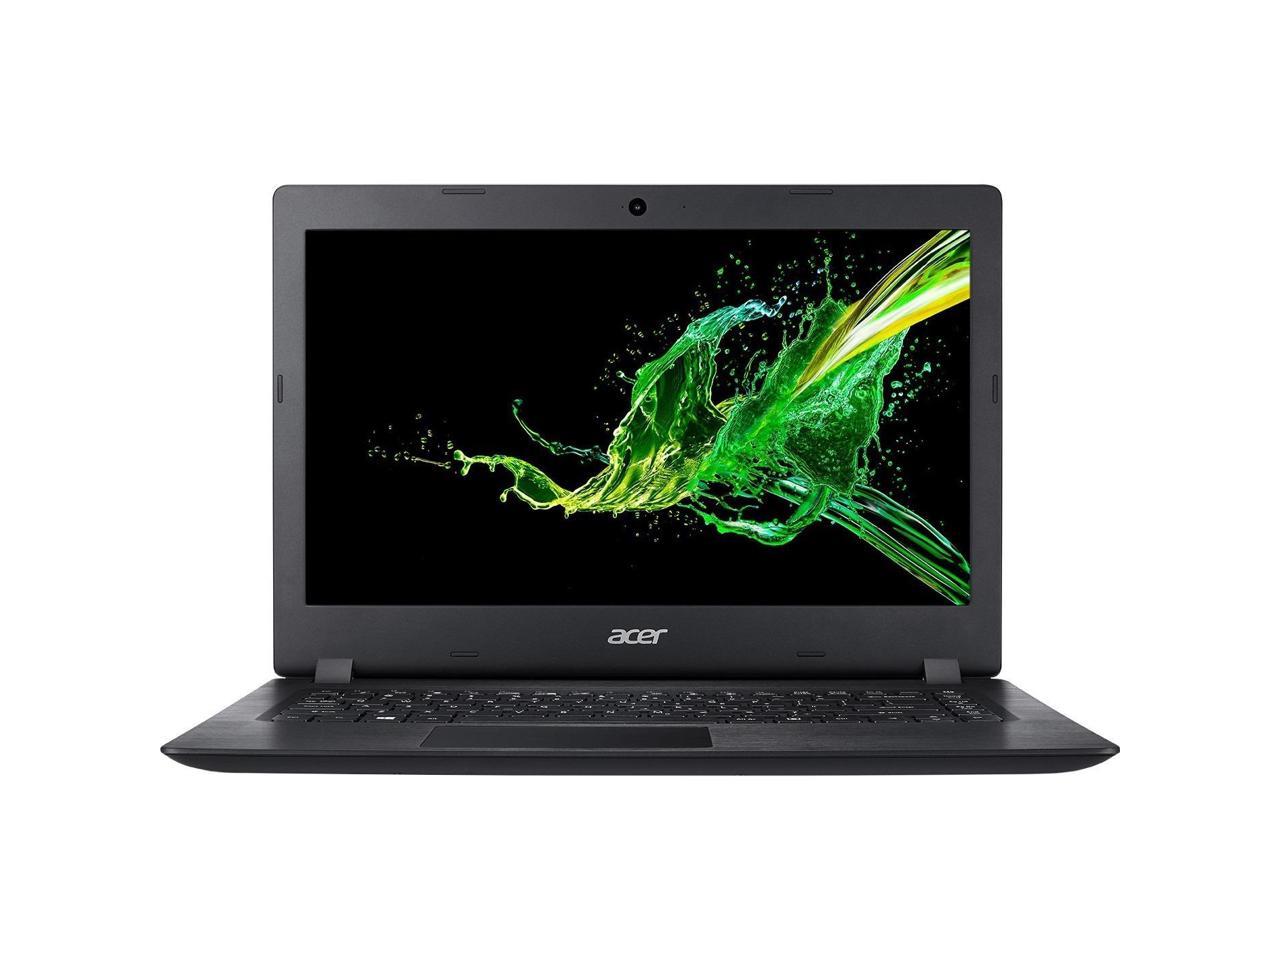 Acer Aspire 3 A314-21-684V 14" Notebook - 1920 x 1080 - A-Series A6-9220e - 4 GB RAM - 128 GB SSD - Obsidian Black